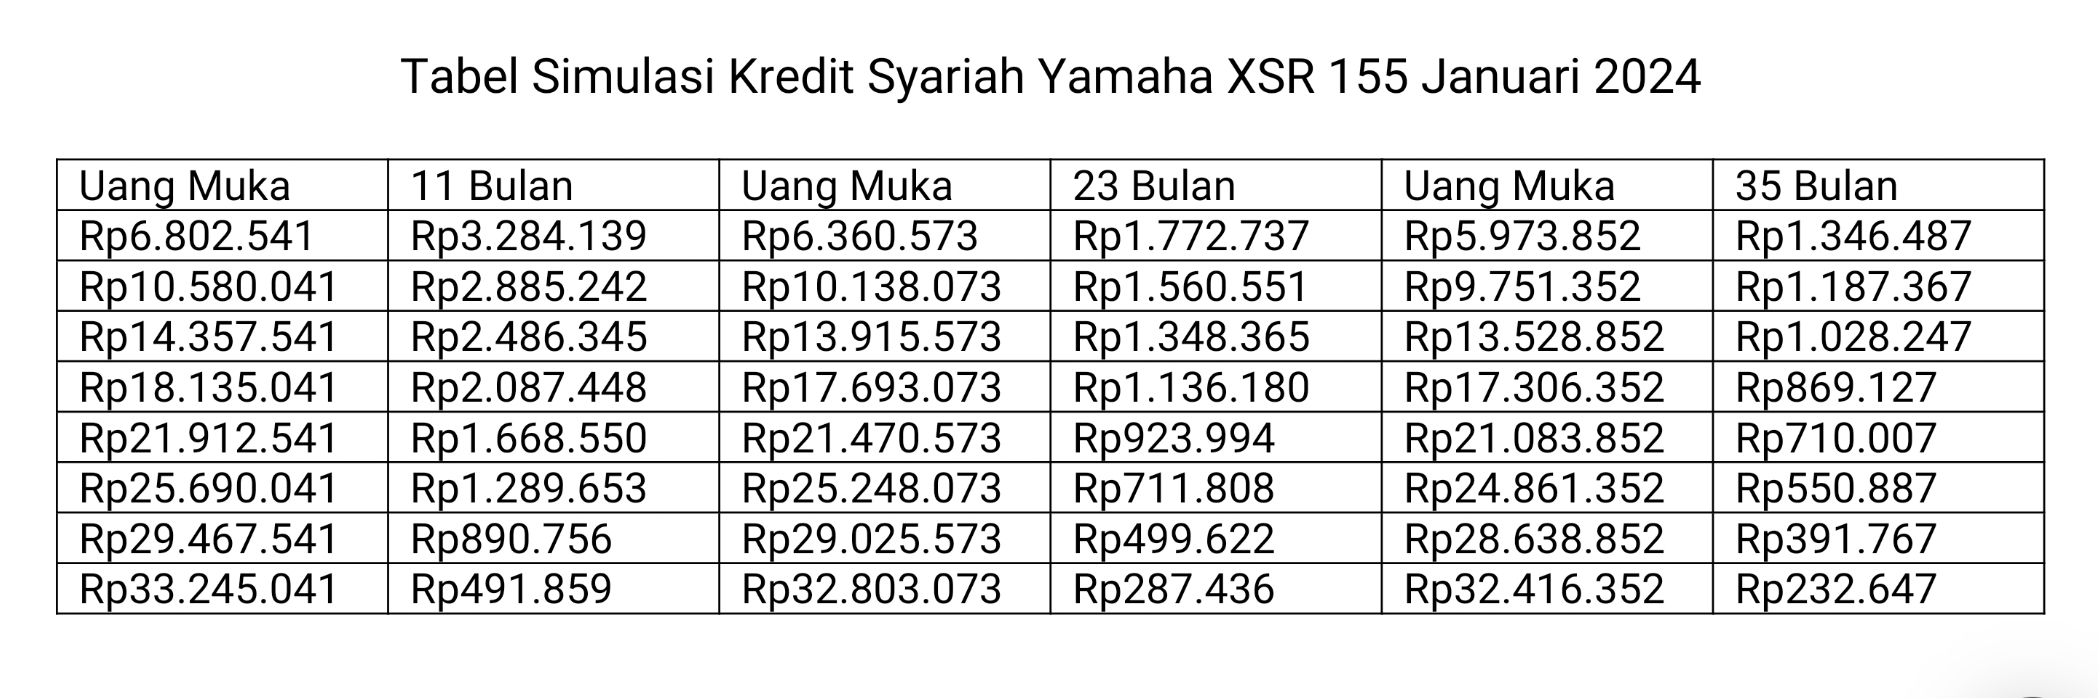 Tabel Simulasi Kredit Syariah Yamaha XSR 155 Januari 2024.